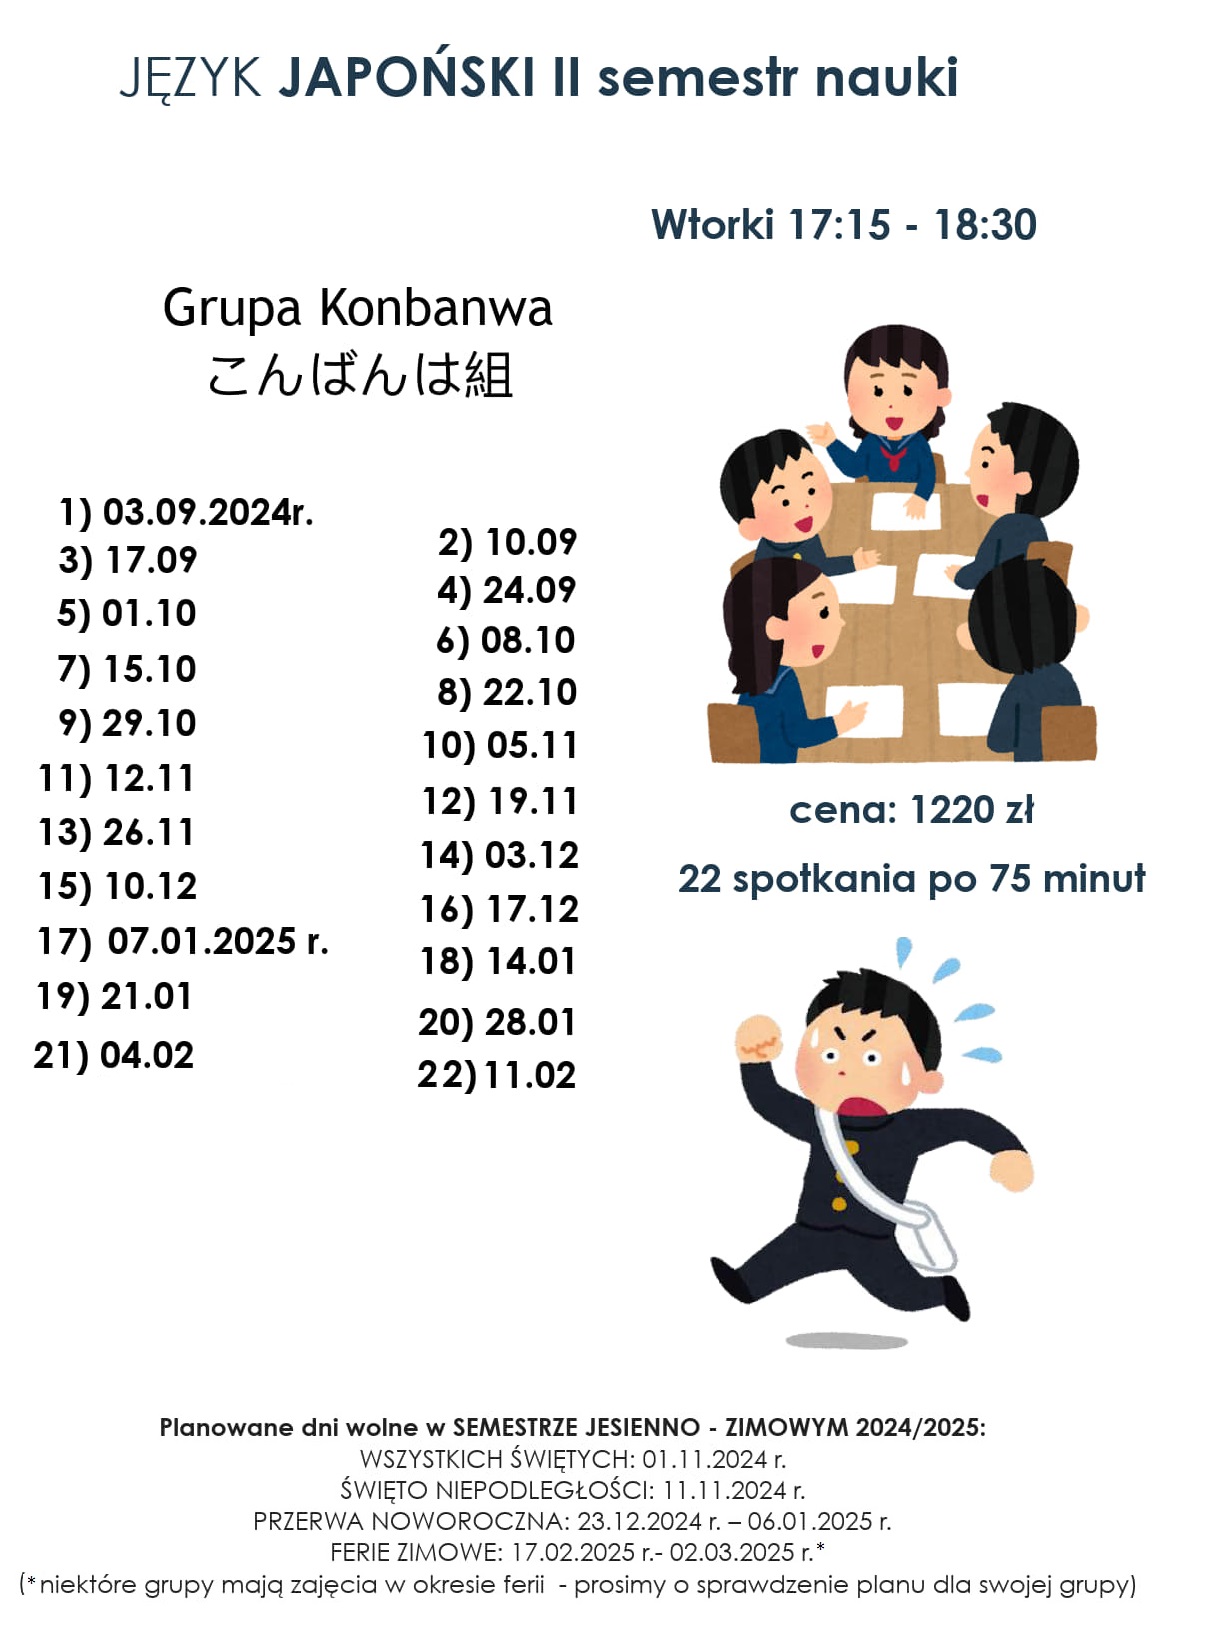 Harmonogram kursu języka japońskiego grupy kontynuującej naukę drugi semestr, start 03.09.2024 - grupa Konbanwa